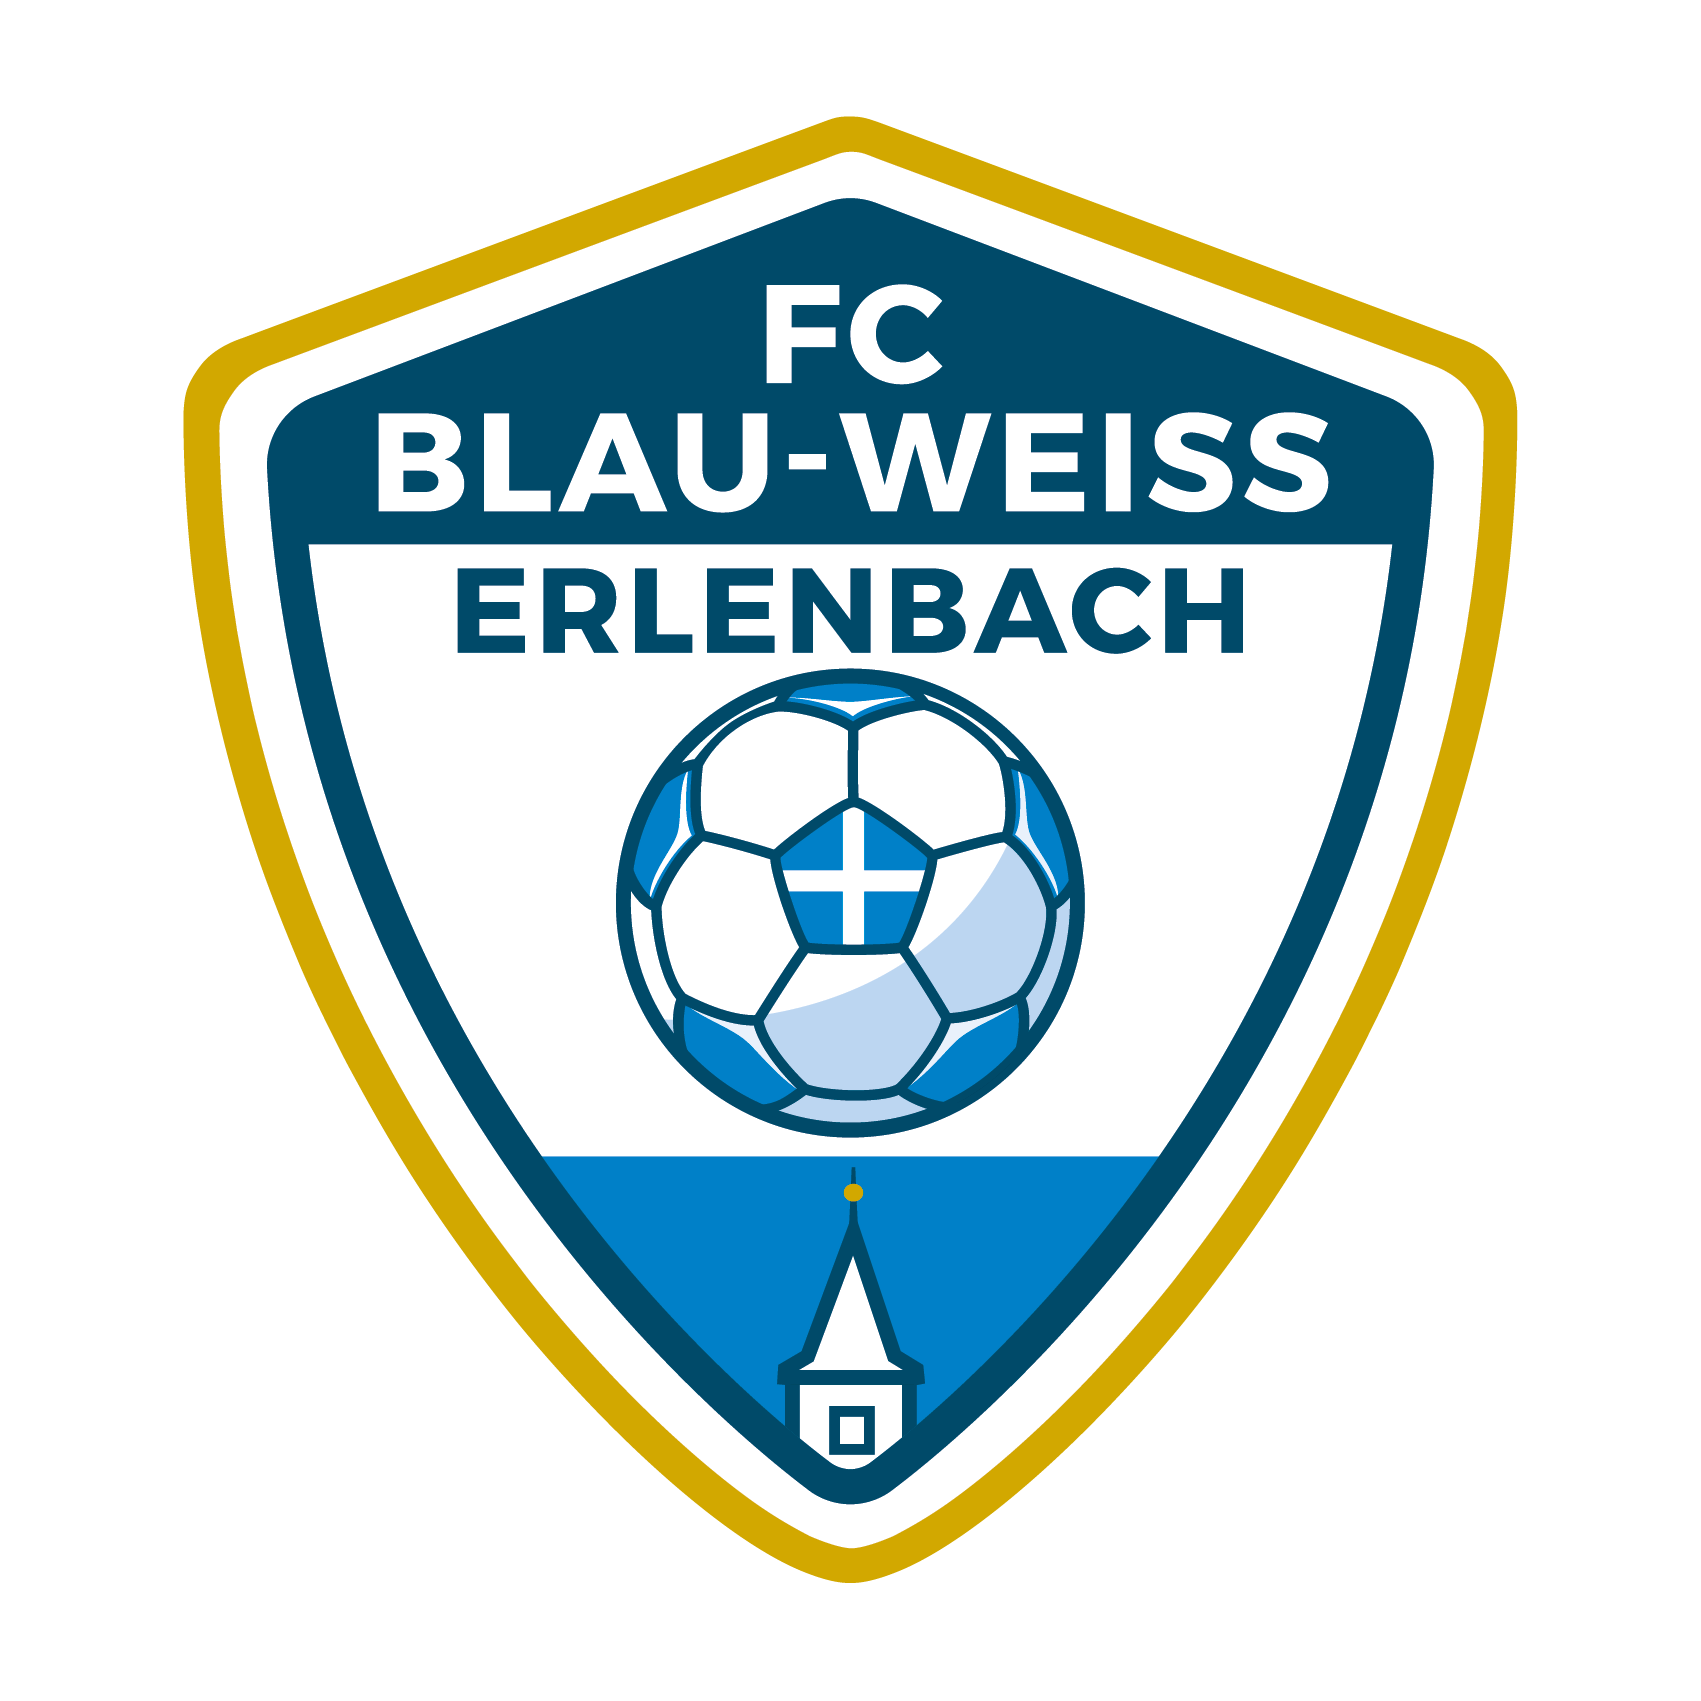 FC Blau-Weiss Erlenbach